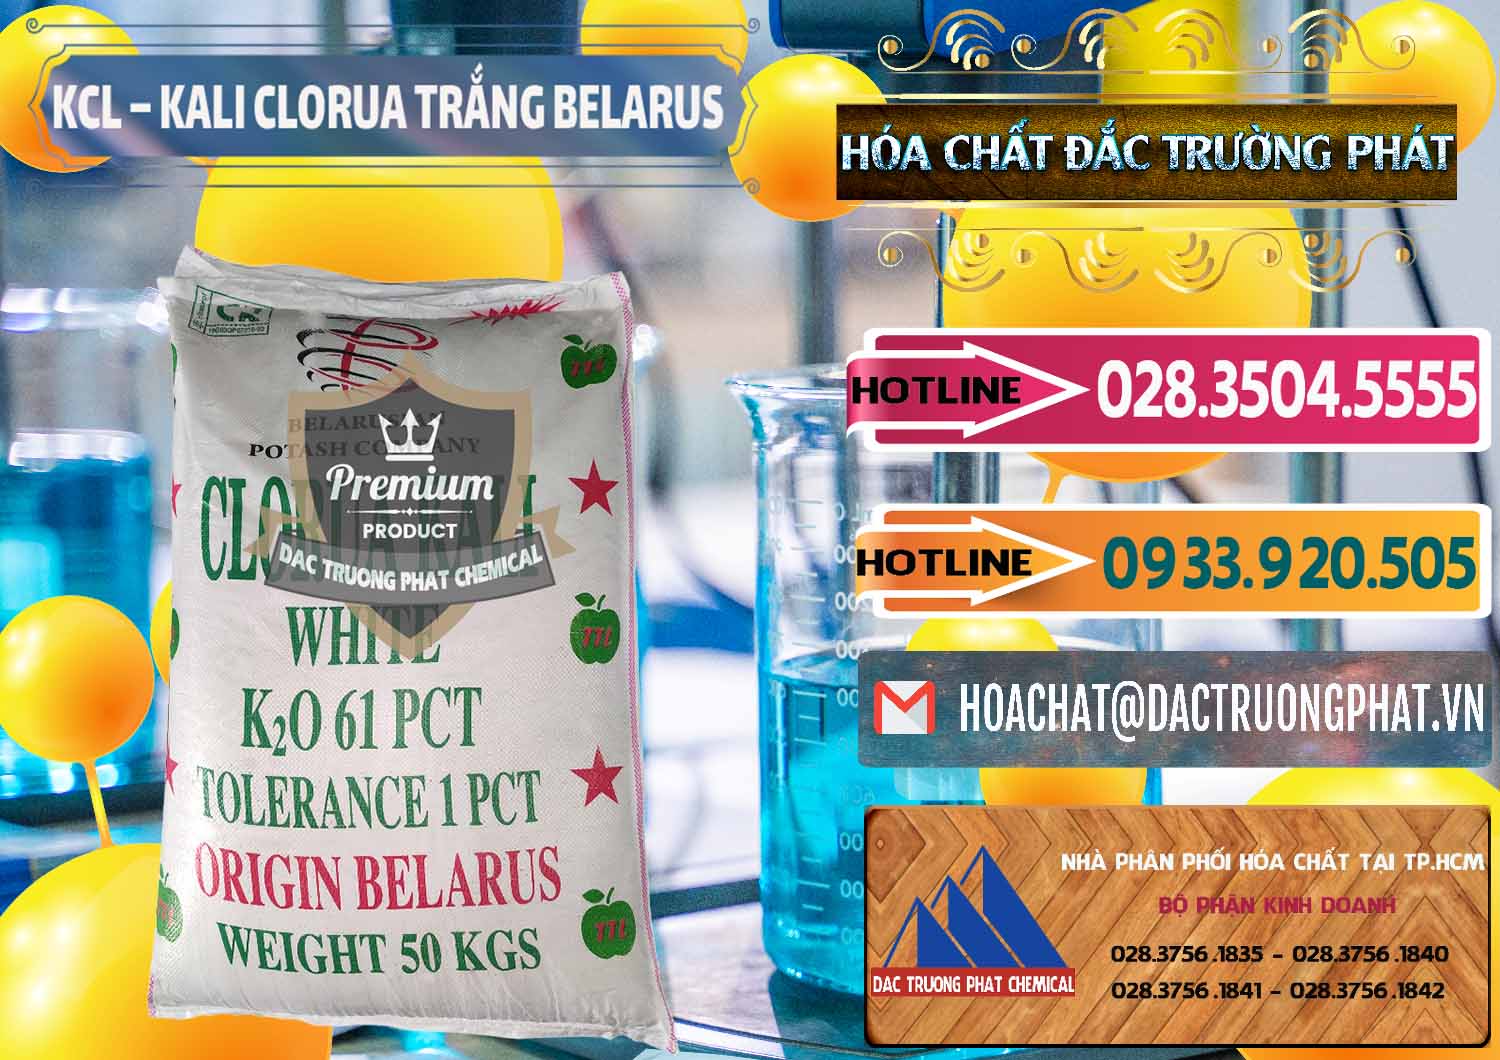 Cty chuyên bán _ cung cấp KCL – Kali Clorua Trắng Belarus - 0085 - Cty chuyên phân phối & bán hóa chất tại TP.HCM - dactruongphat.vn